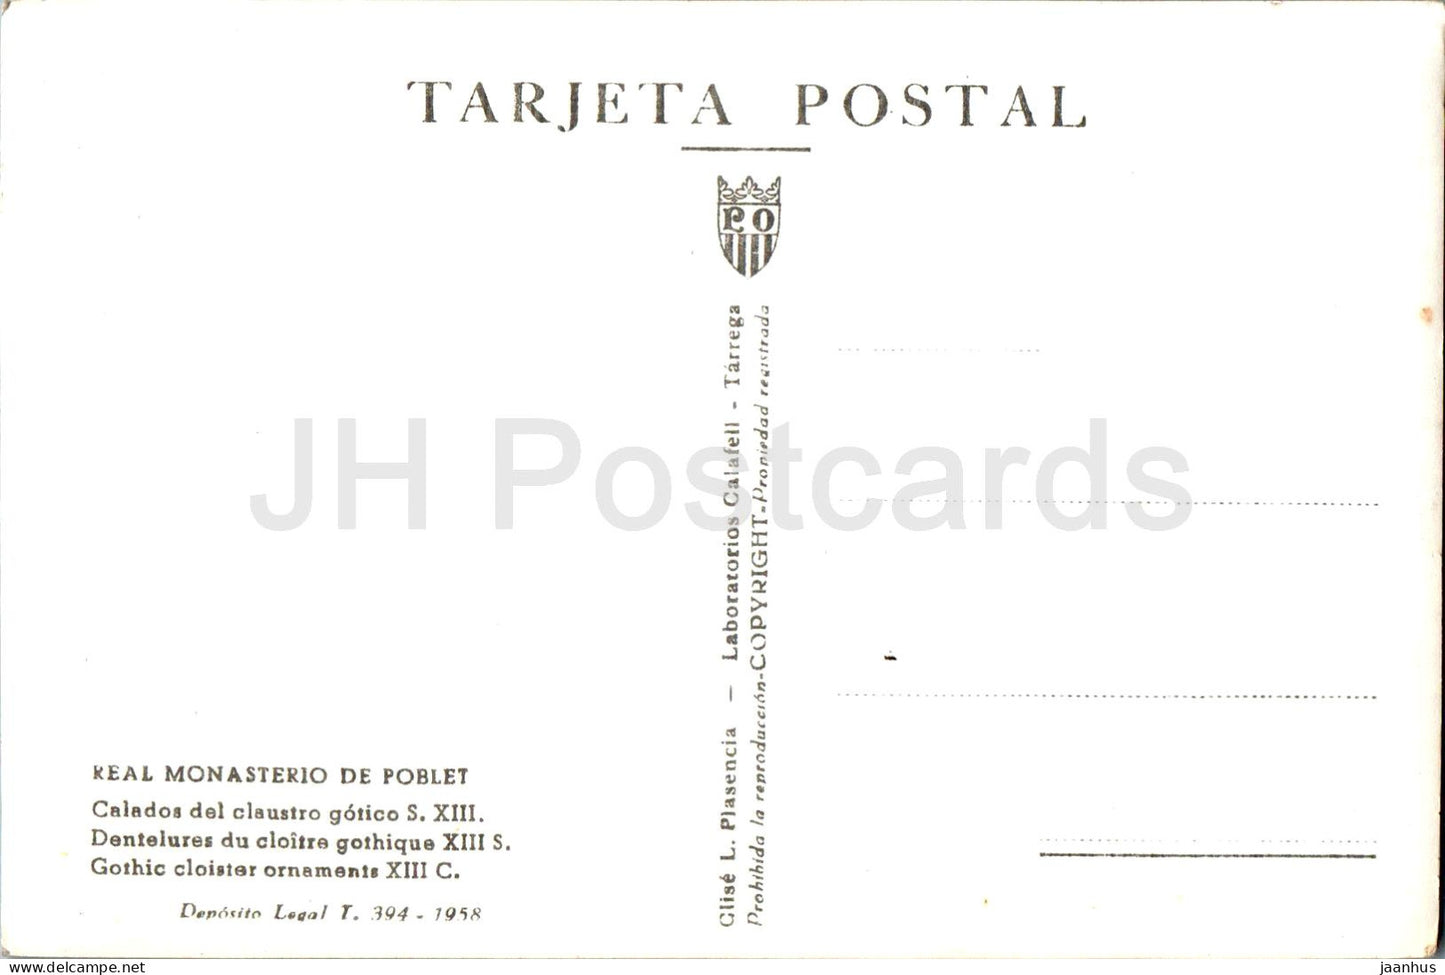 Real Monasterio de Poblet - Calados del claustro gotico - Gotische Kreuzgangornamente, alte Postkarte - 1958 - Spanien - unbenutzt 